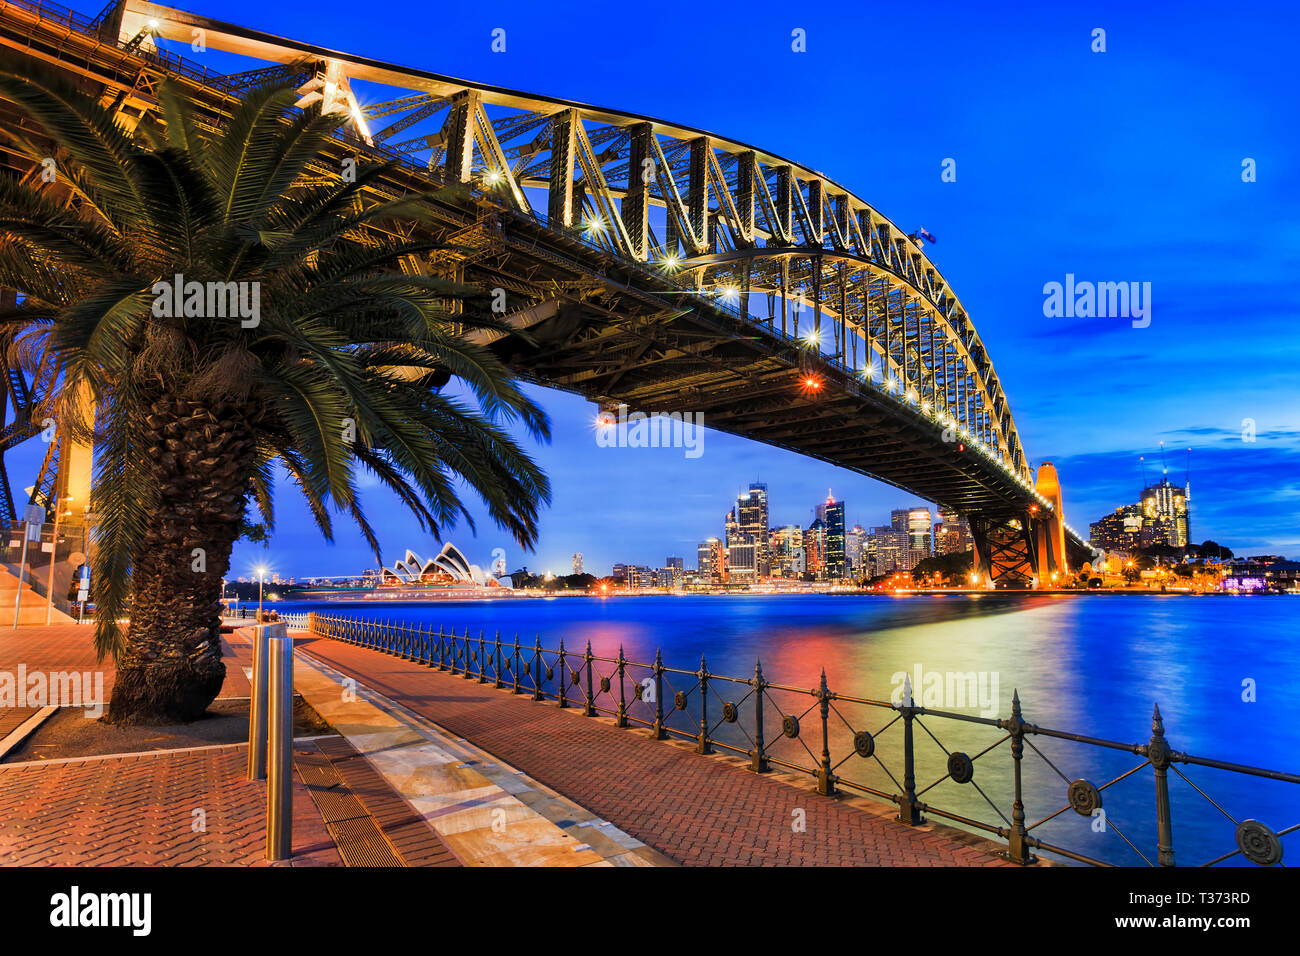 Vue latérale de l'arche d'acier du pont du port de Sydney pendant heure bleue au coucher du soleil sur les eaux troubles du port de Sydney vers les rochers et city CBD w Banque D'Images